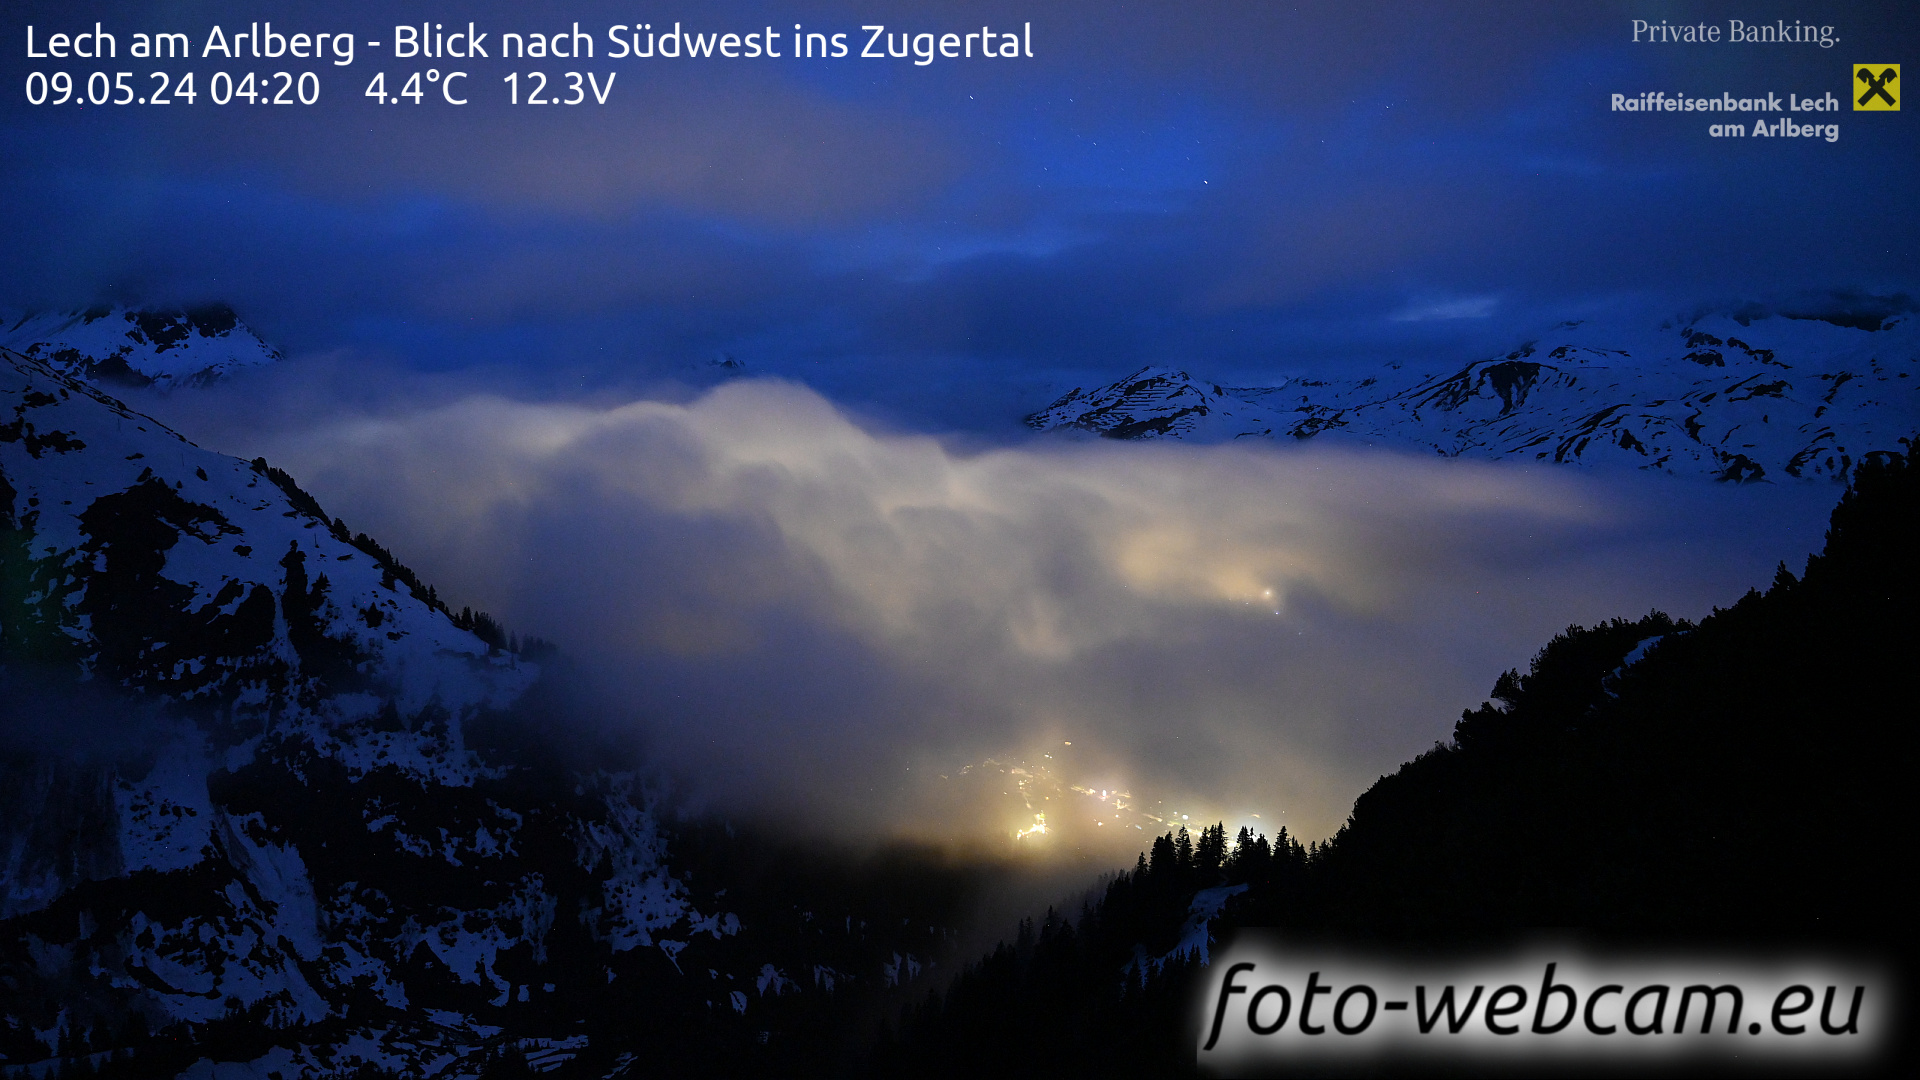 Lech am Arlberg Tue. 04:31